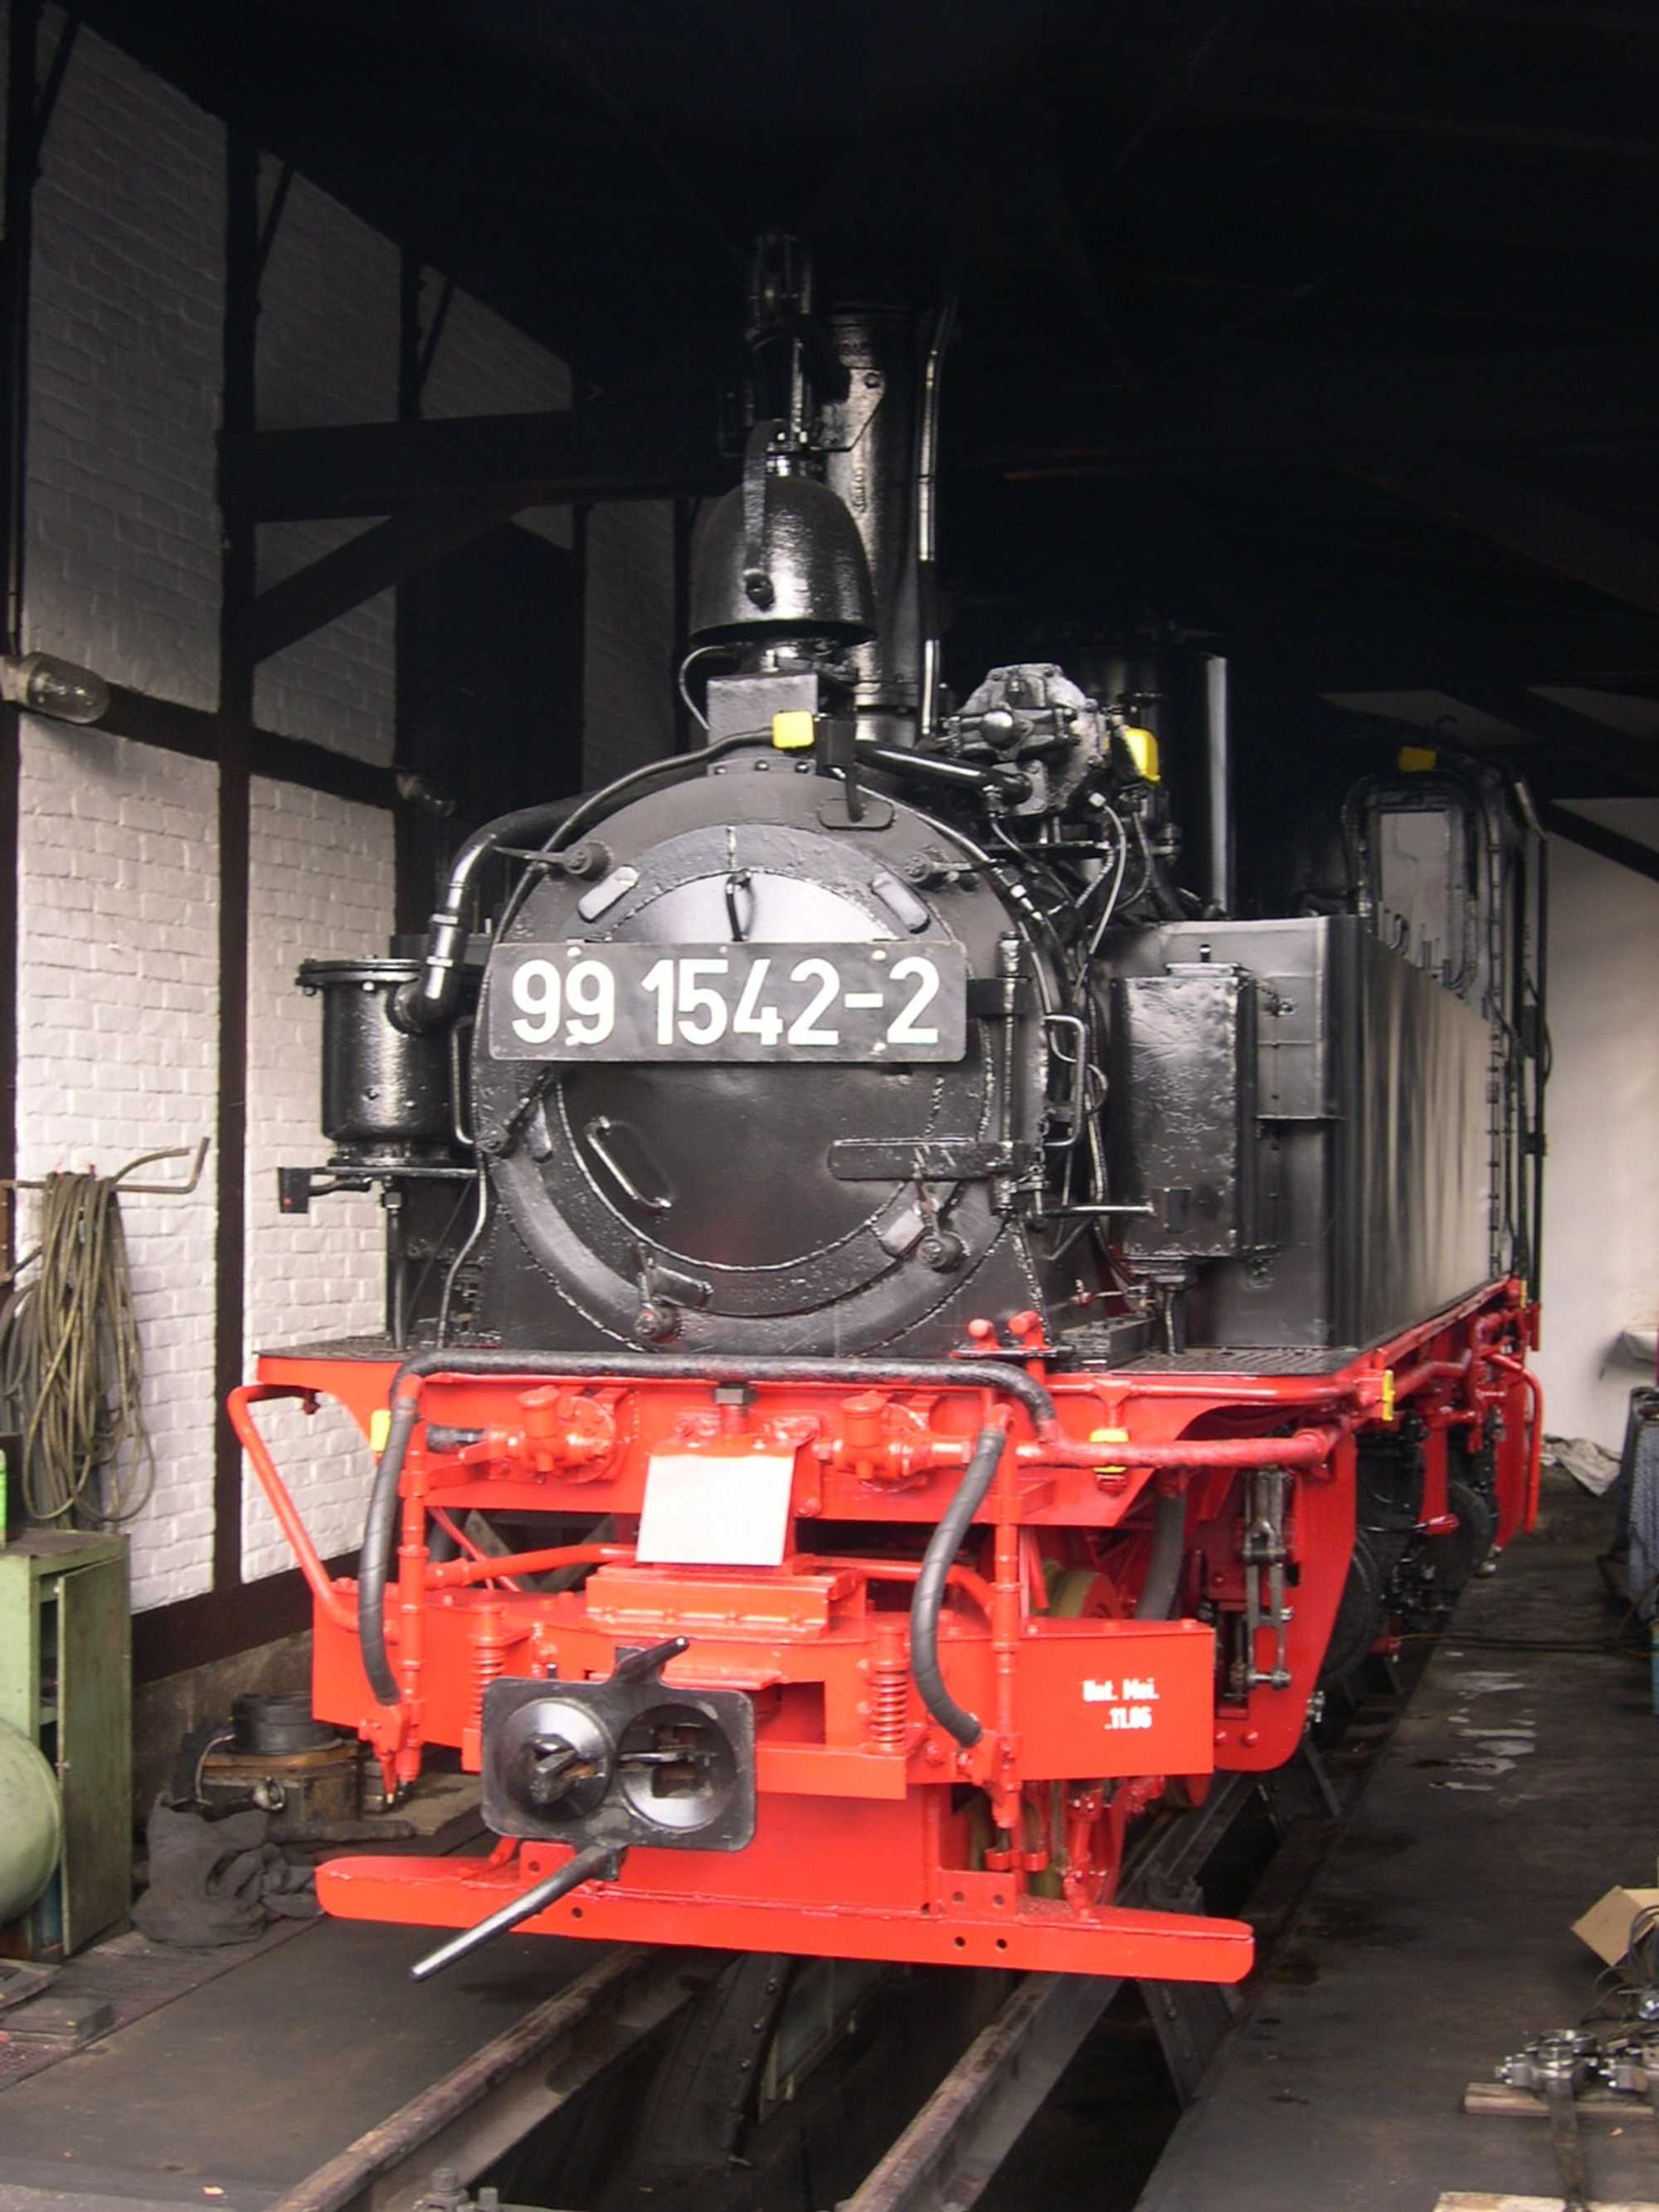 Nach der Rückkehr von der Hauptuntersuchung im Dampflokwerk Meiningen wird die IV K 99 1542-2 im Lokschuppen Jöhstadt für die Lastprobefahrt vorbereitet.